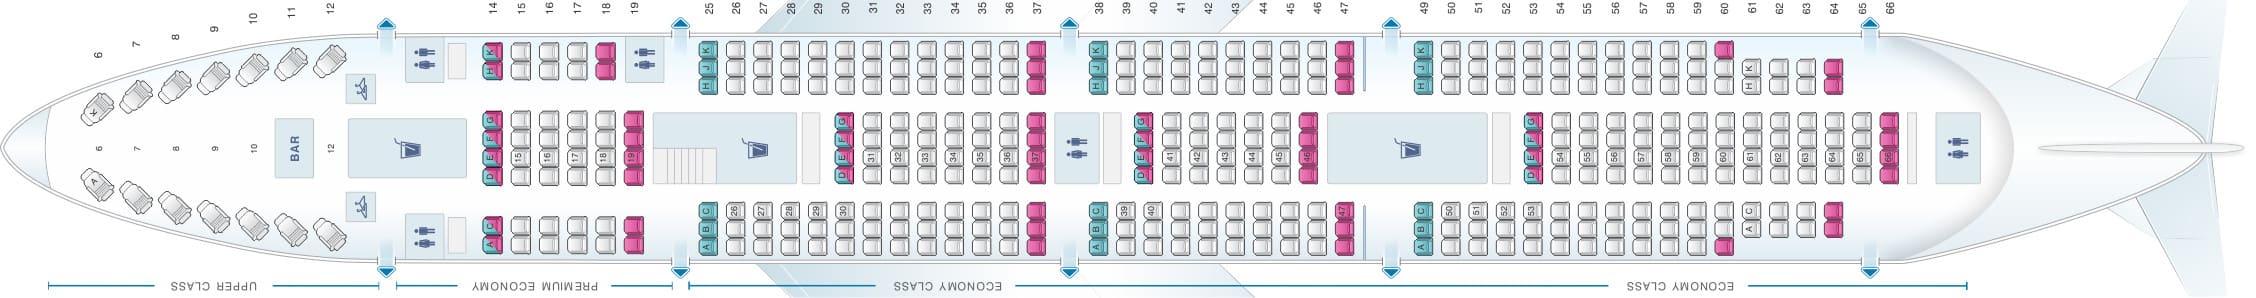 Virgin Atlantic 747-400 Seat Map